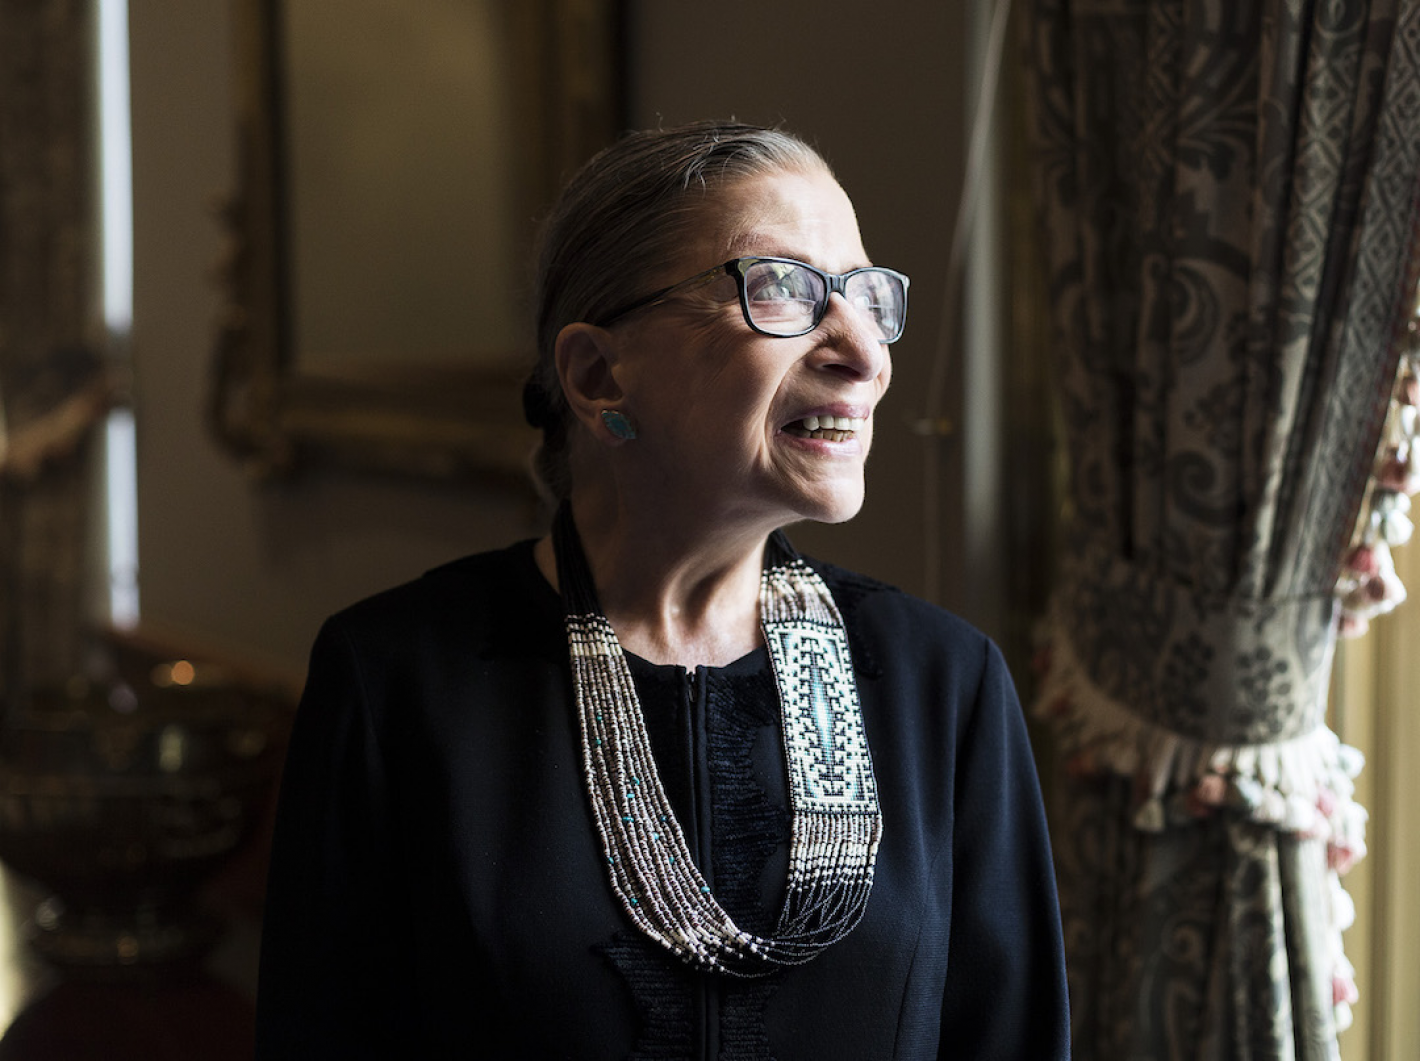 Murió Ruth Bader Ginsburg, jueza ícono de la igualdad en la Corte de EEUU -  Mendoza Post